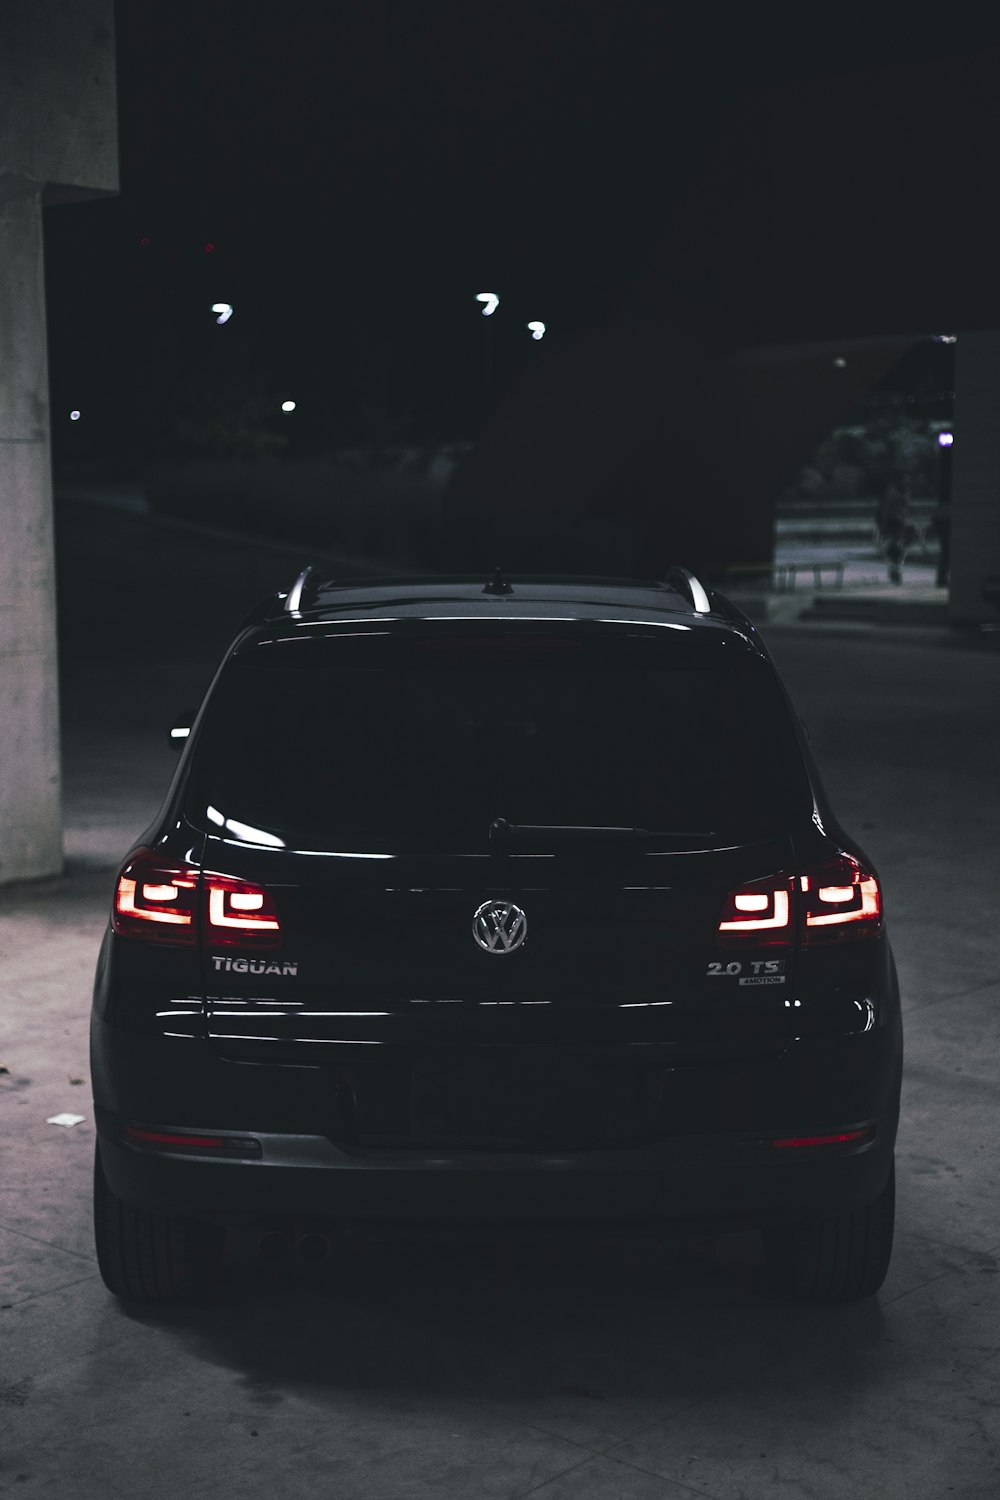 parked black Volkswagen car